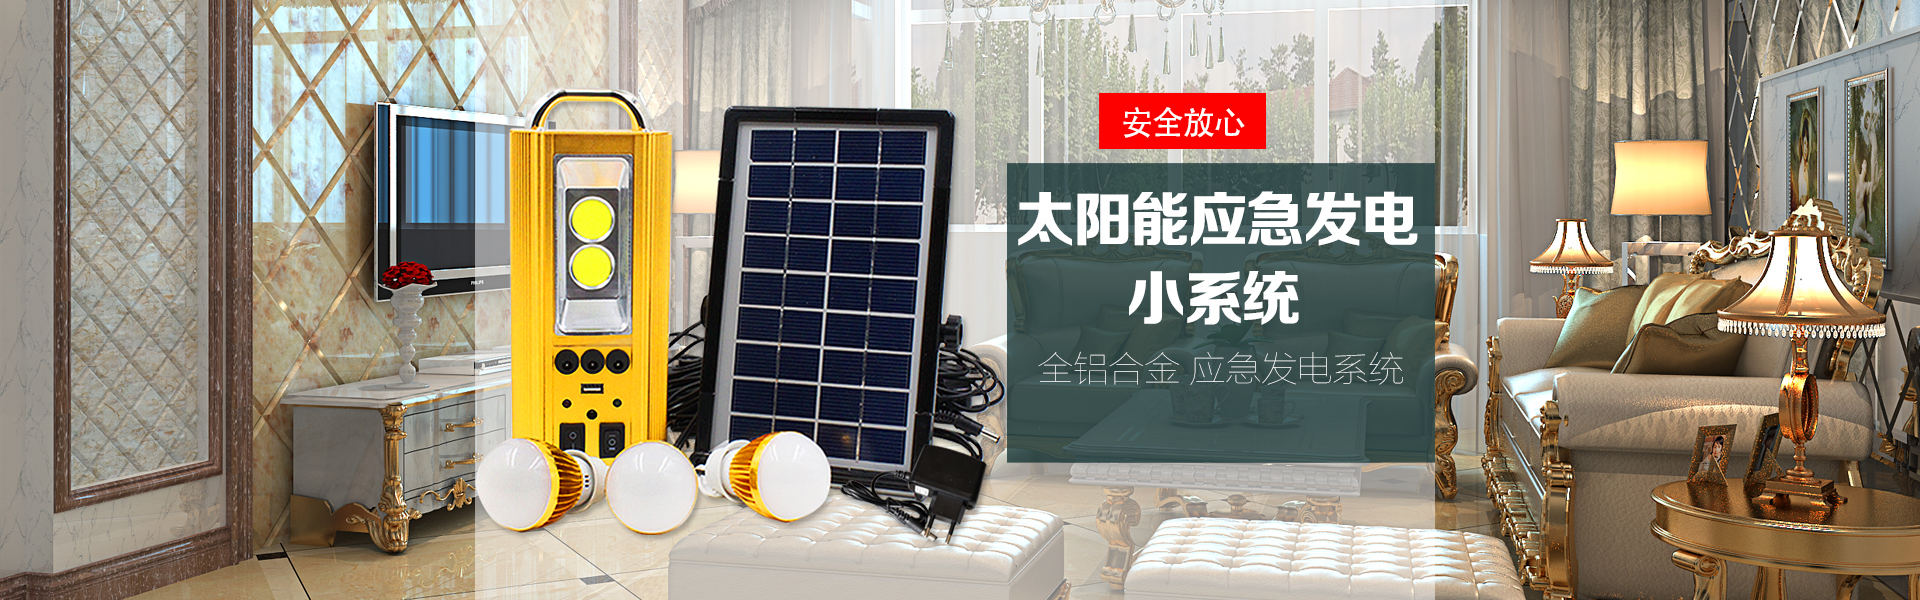 云南太阳能热水器安装步骤